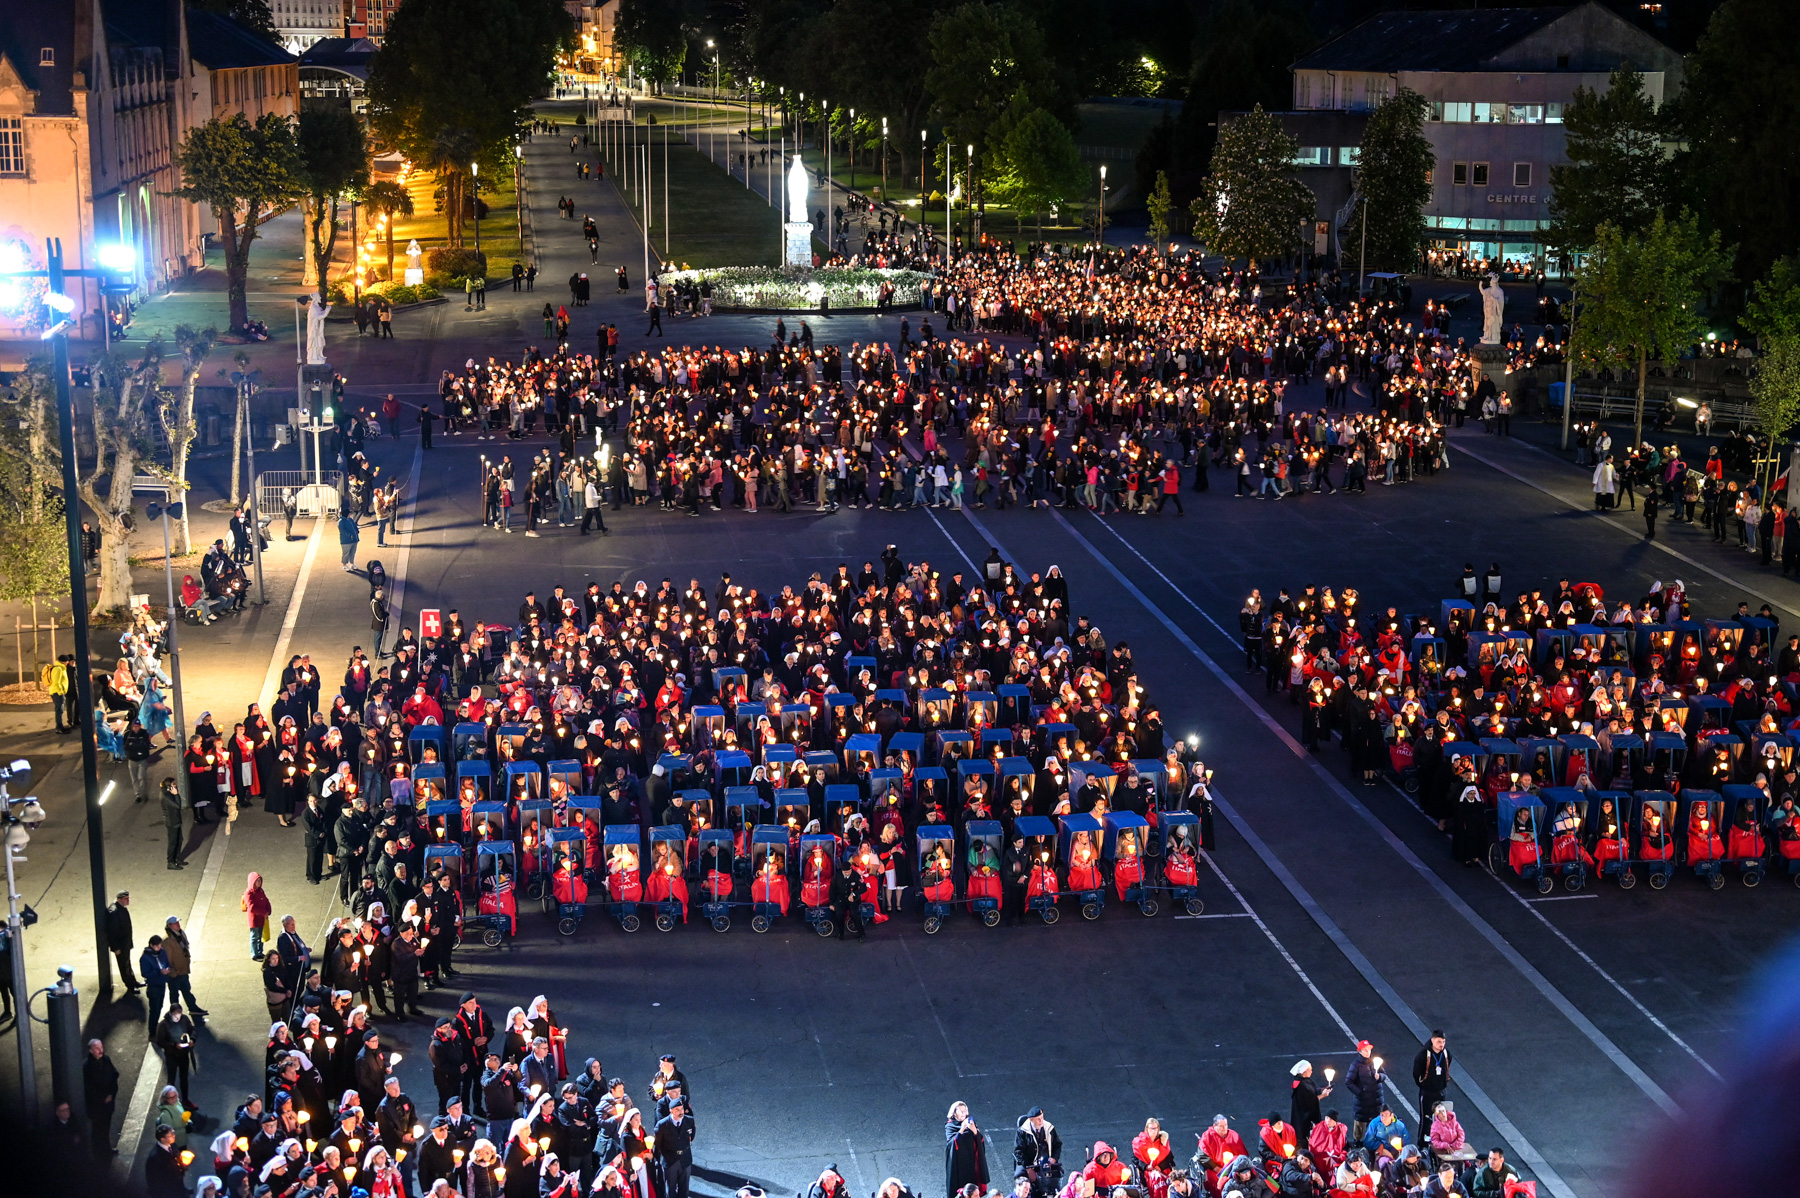 Les uniformes des pèlerins de l’Ordre de Malte inondent les rues de Lourdes